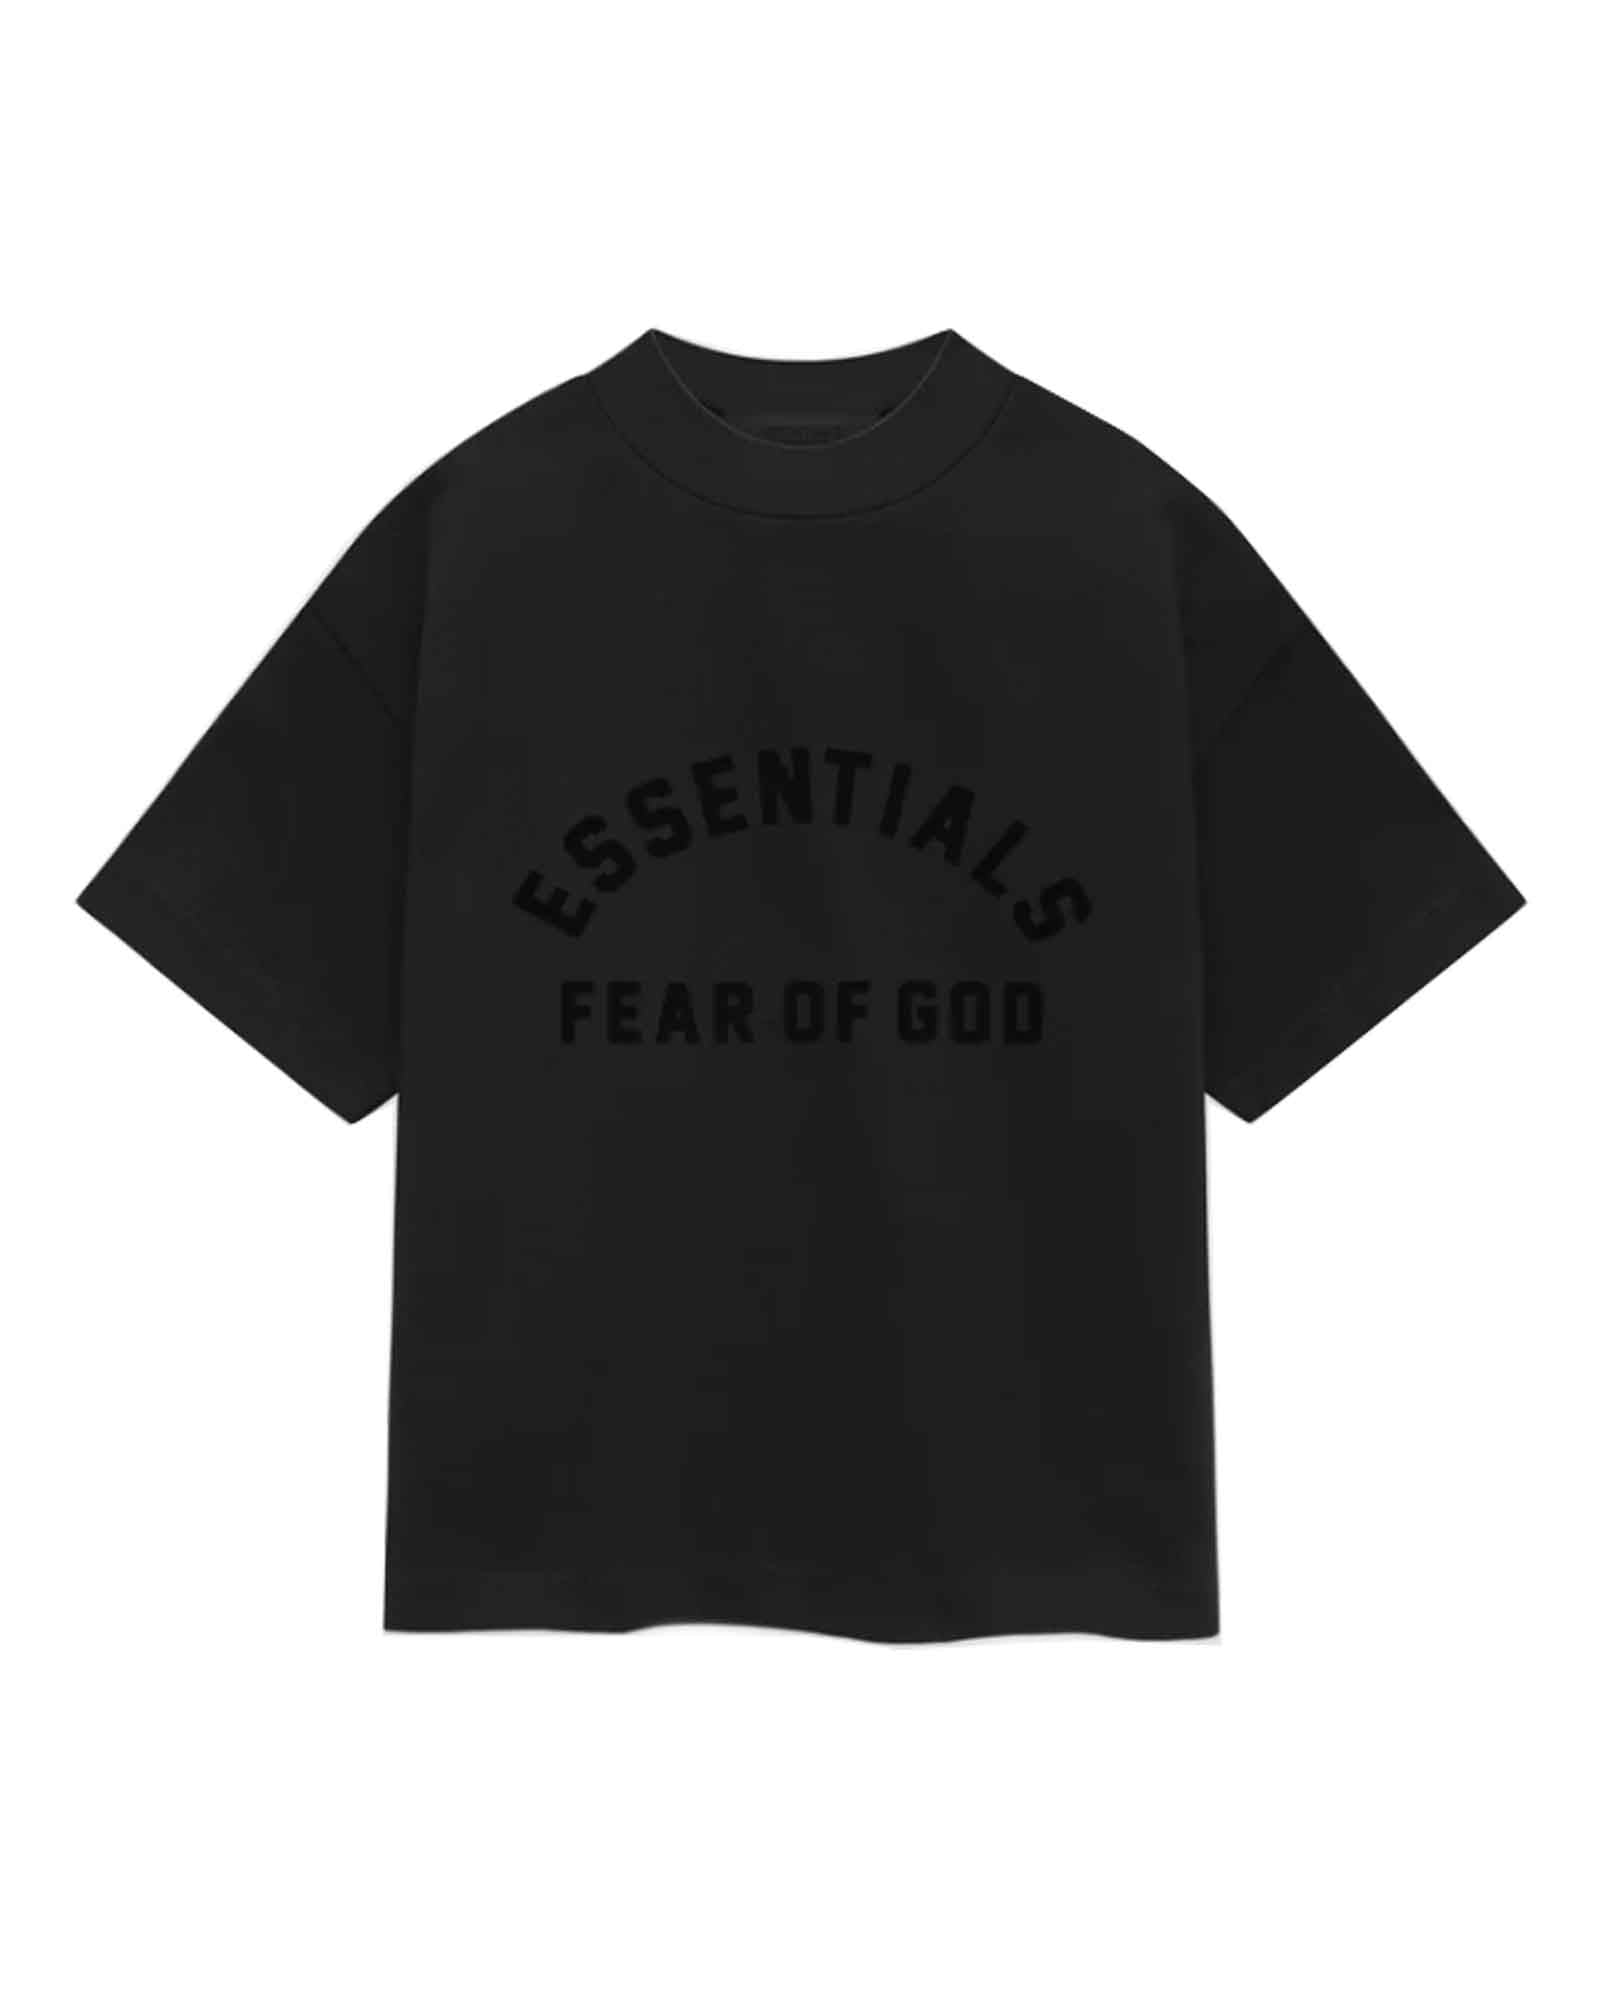 完売商品！FEAR OF GOD ESSNTIALS クルーネックTシャツ袋のまま配送します